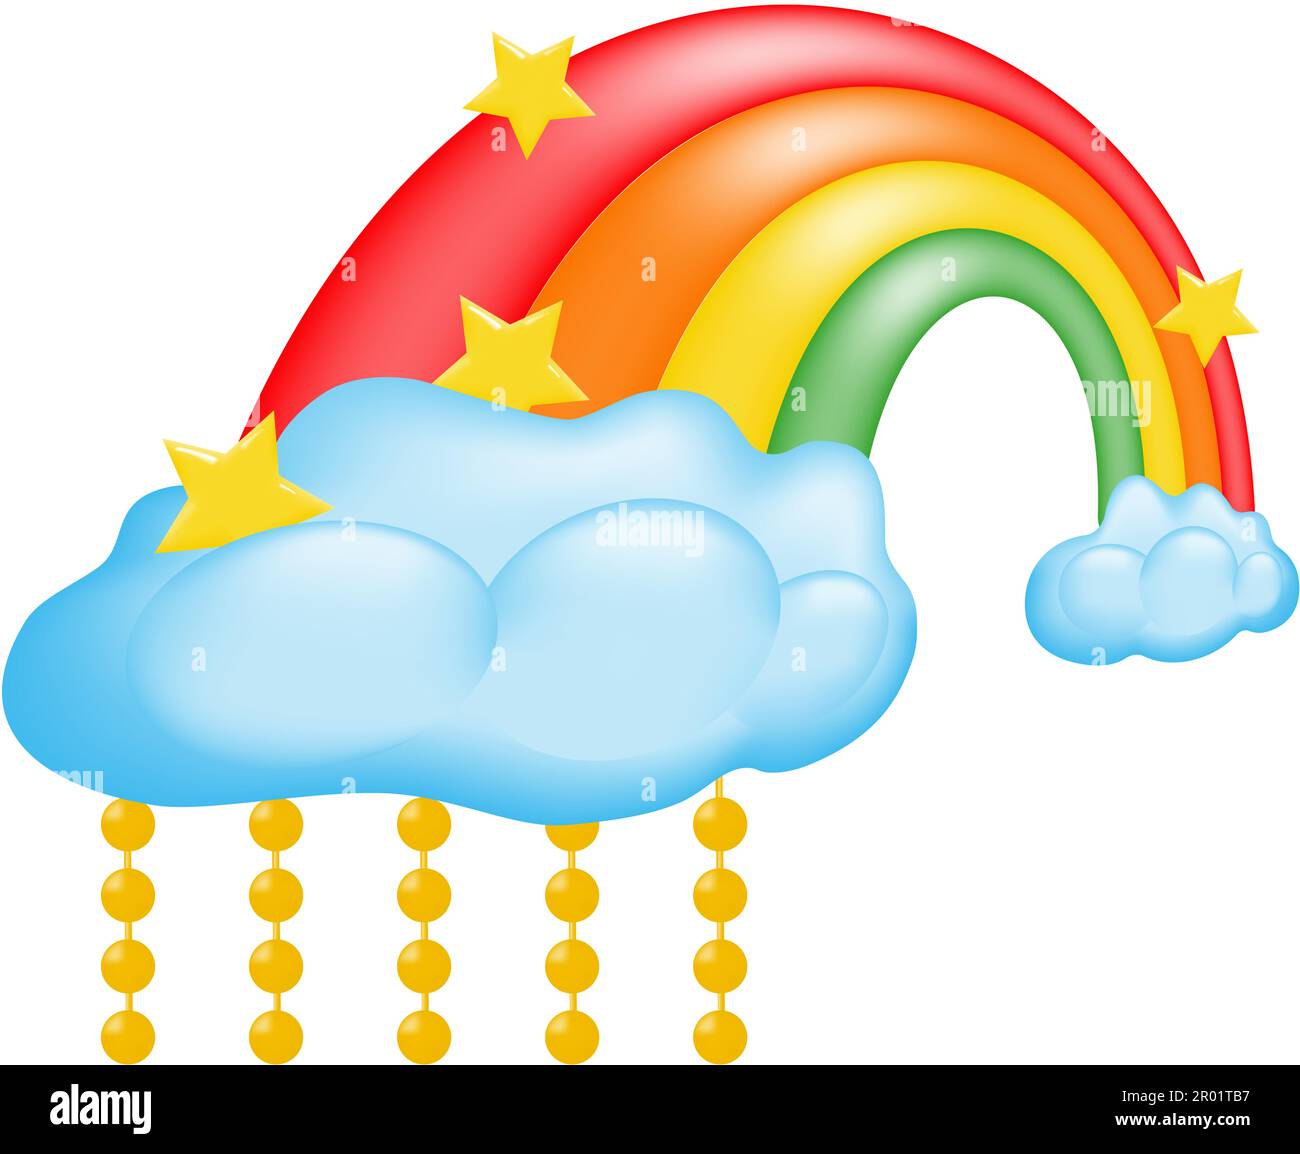 Farbenfroher 3D-Regenbogen im Cartoon-Stil mit flauschigen Wolken und Perlen. Wanddekor für Kinderzimmer. Vektordarstellung. Stock Vektor